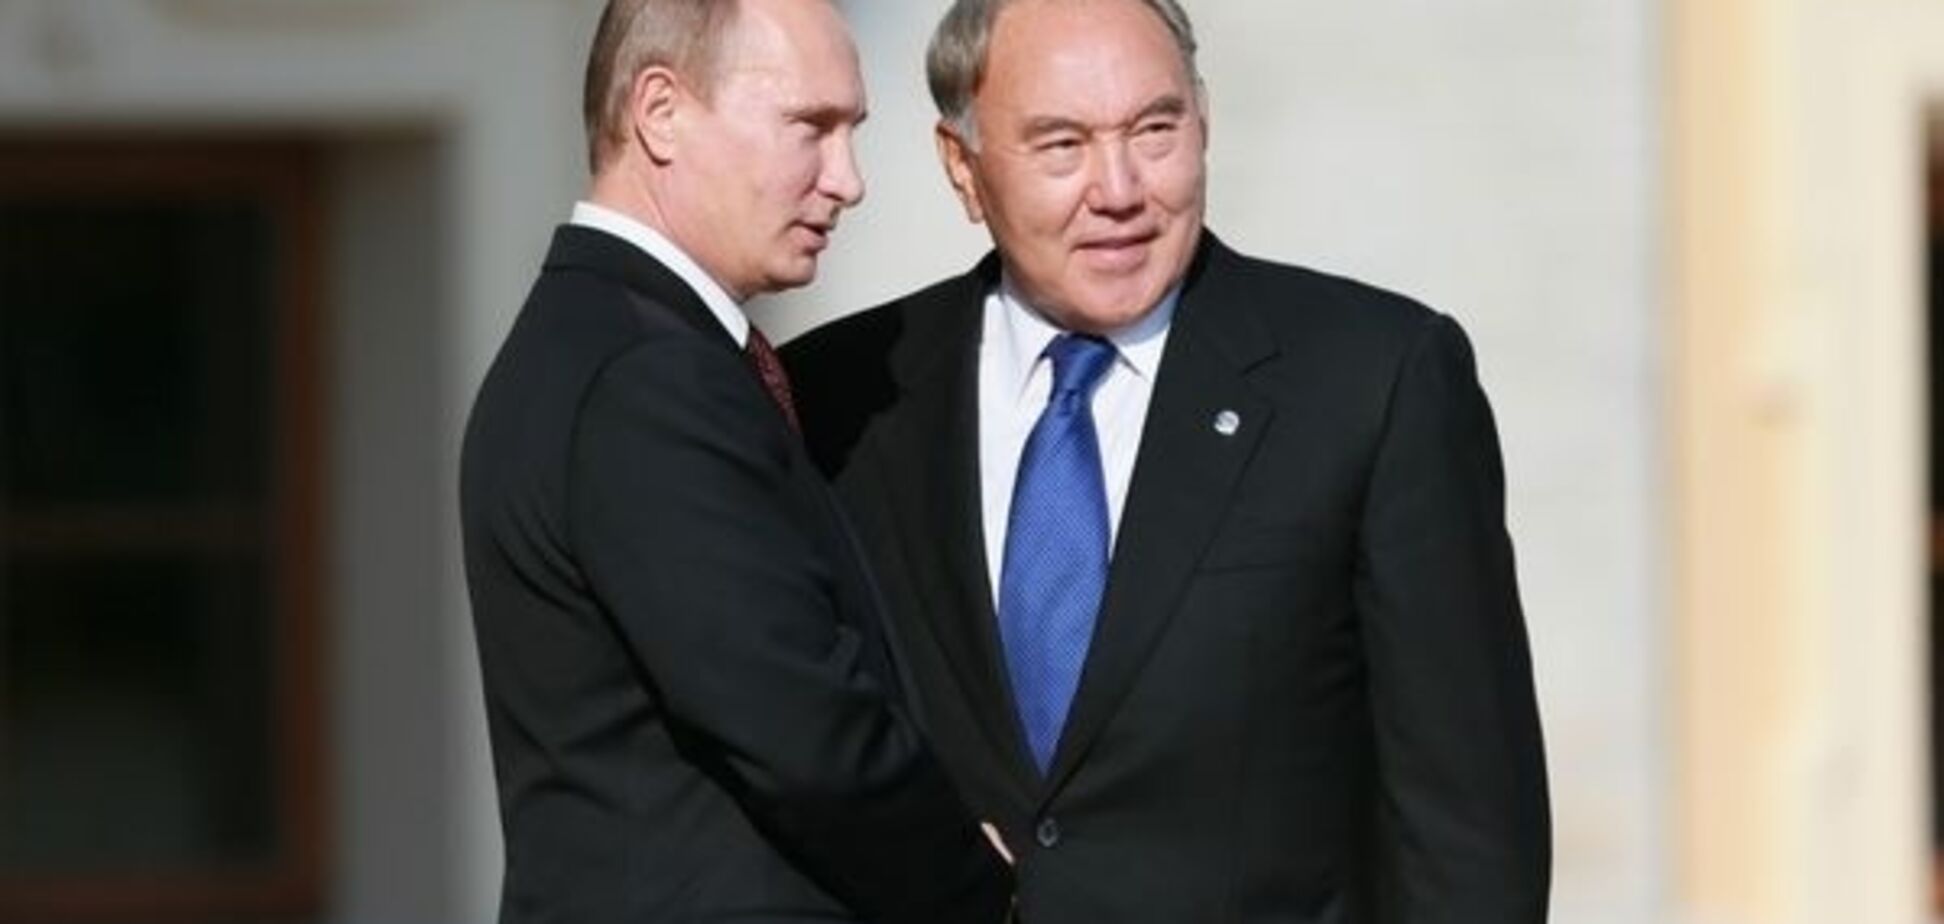  Одинокий волк и 'дедушка нации': названы главные отличия Путина от Назарбаева